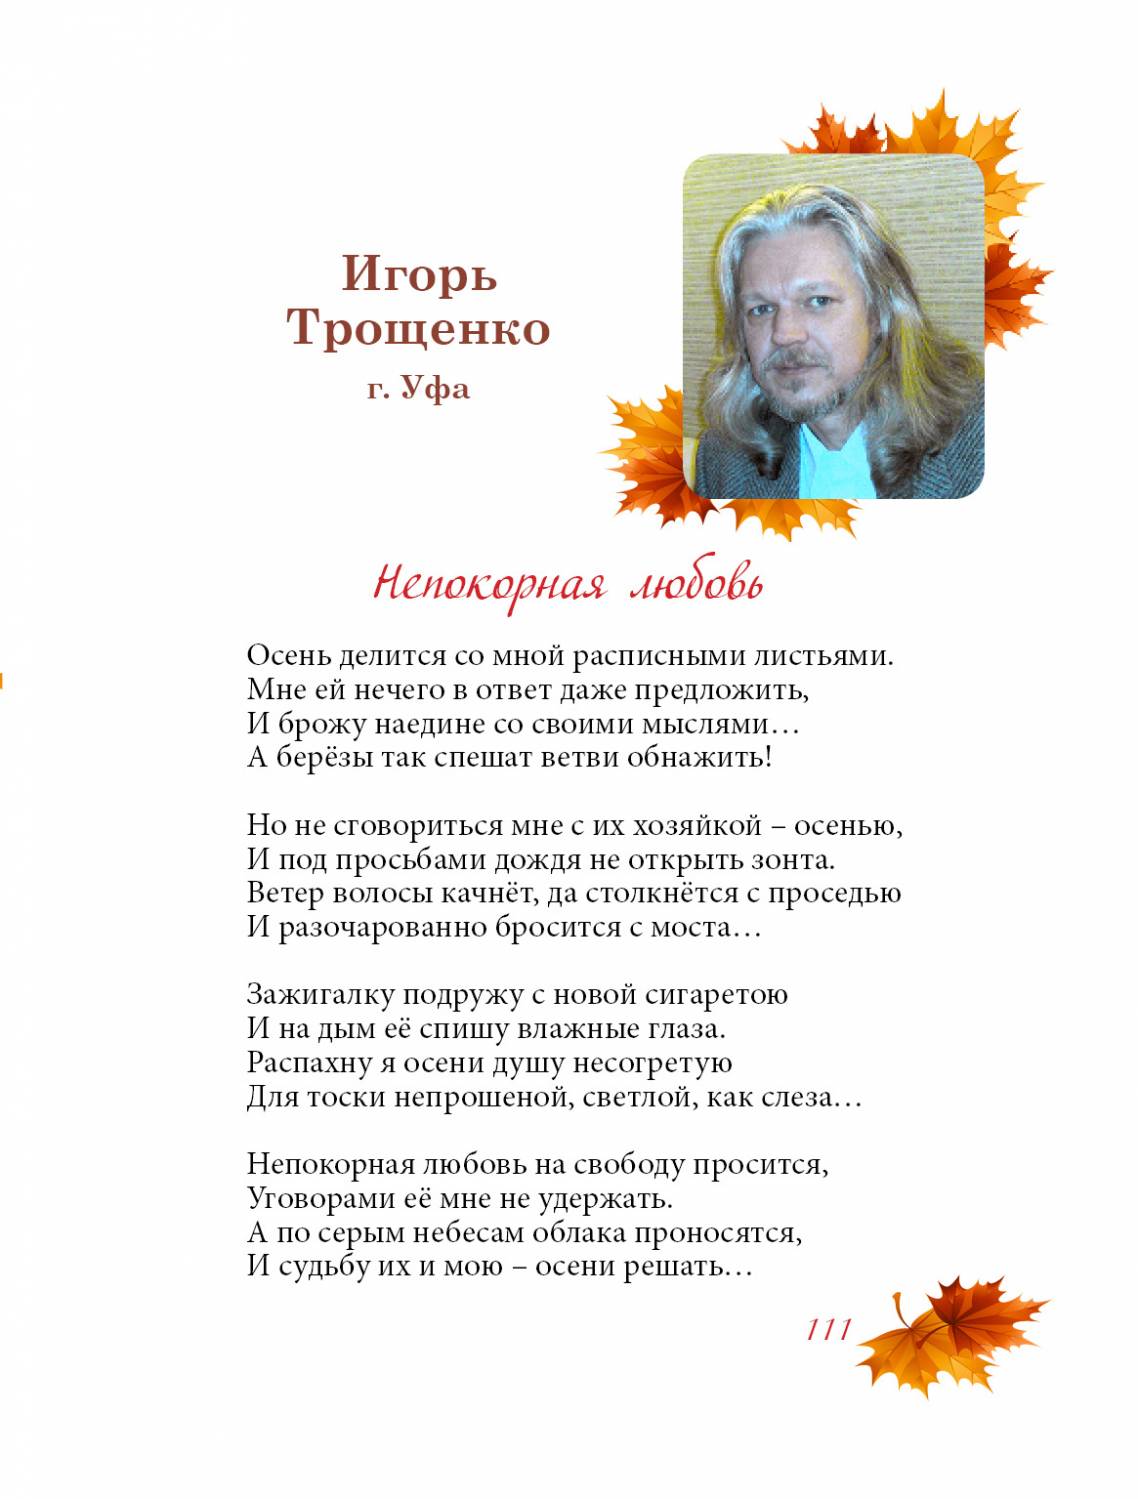 Трощенко Игорь